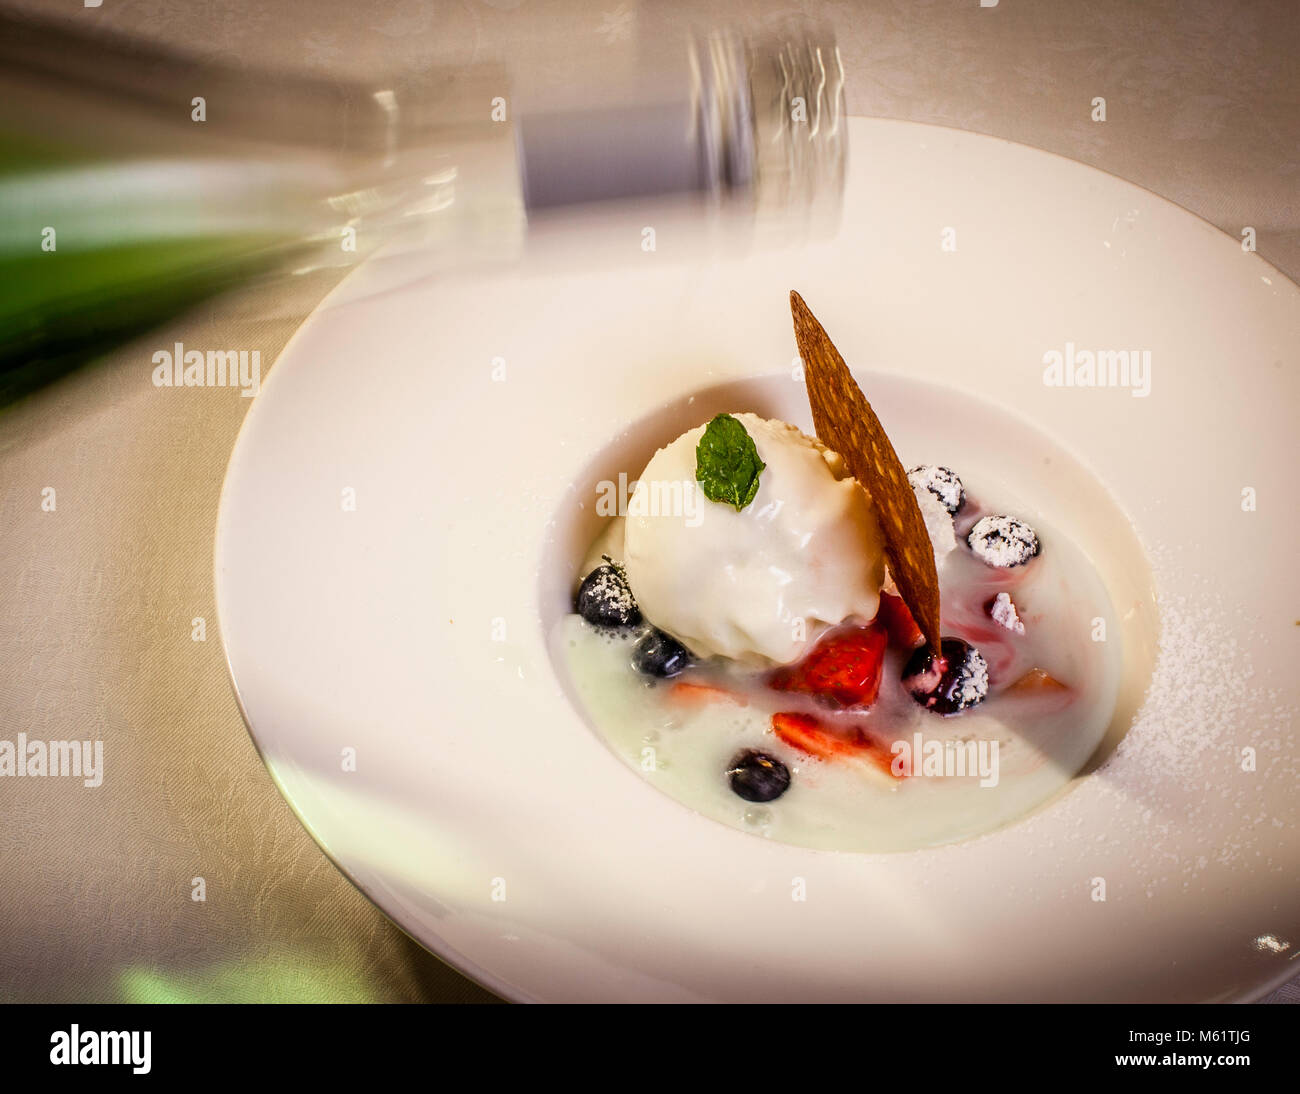 Gourmet-Gericht im Hotel Schiff in Hittisau, Österreich. Hausgemachtes Joghurt-Eis mit Alpcider, einem österreichischen Apfelwein mit alpinen Kräutern und Zitrone Stockfoto